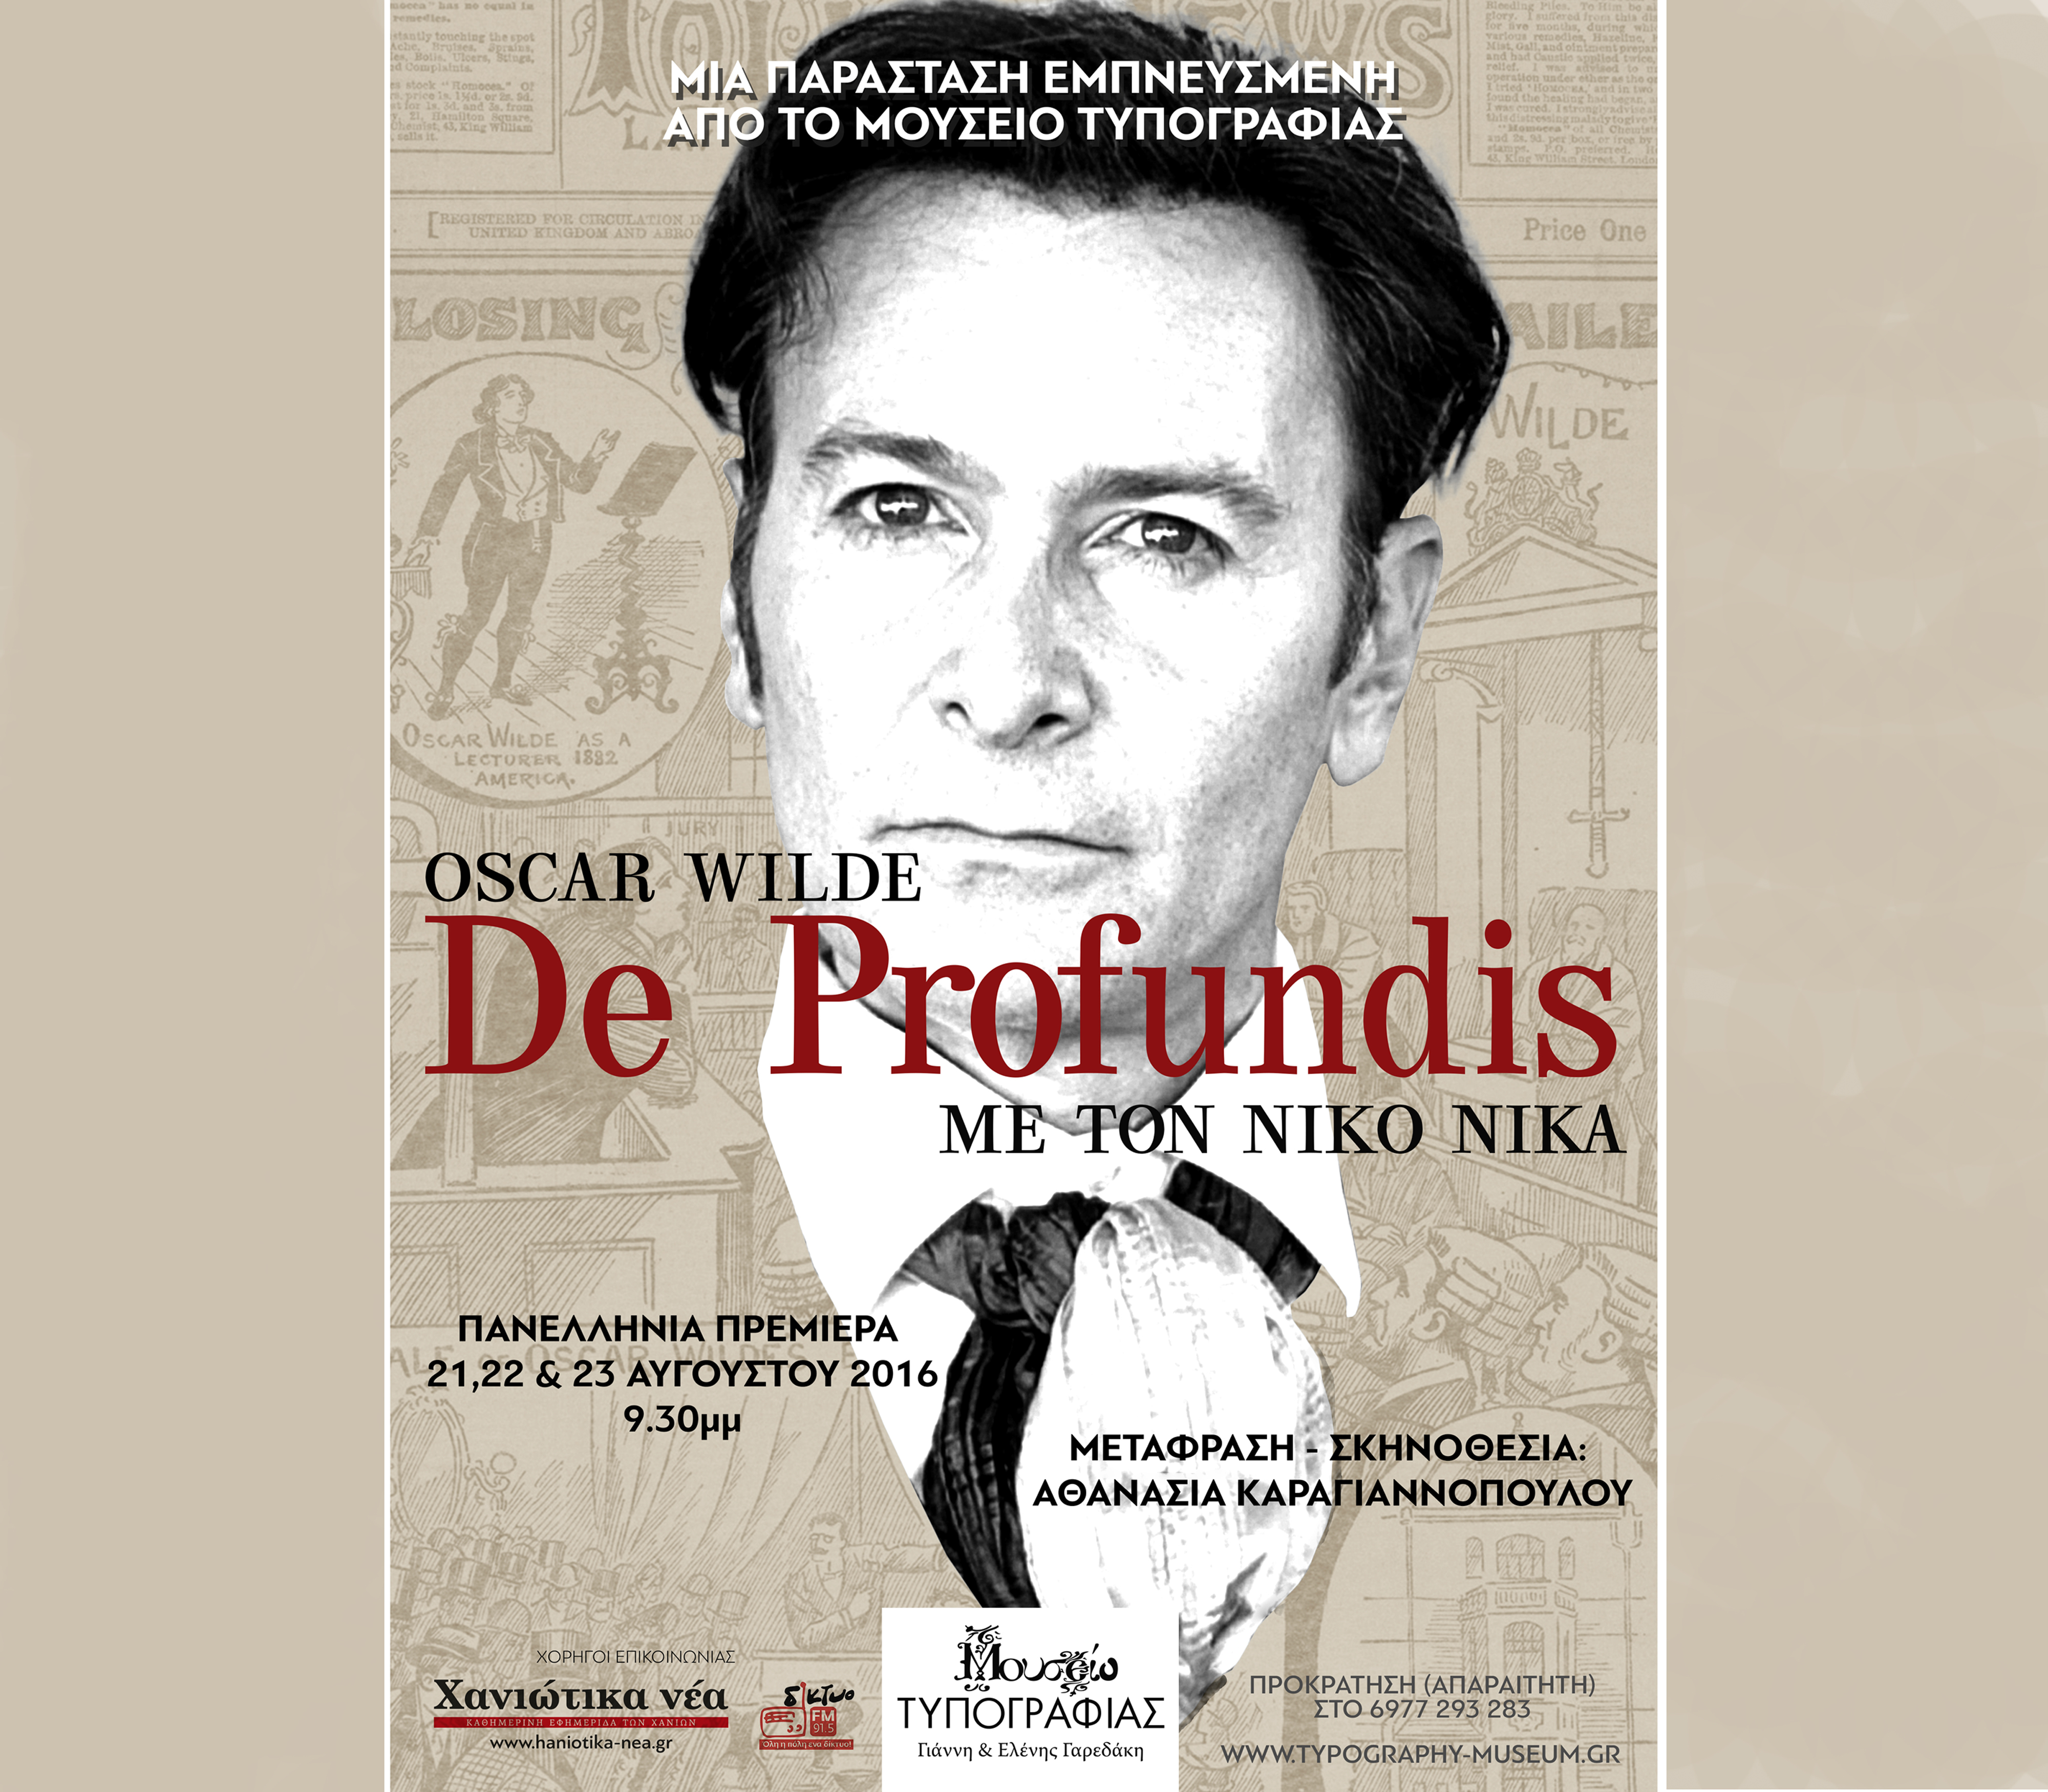 Πανελλήνια πρεμιέρα της θεατρικής παράστασης De Profundis στα Χανιά